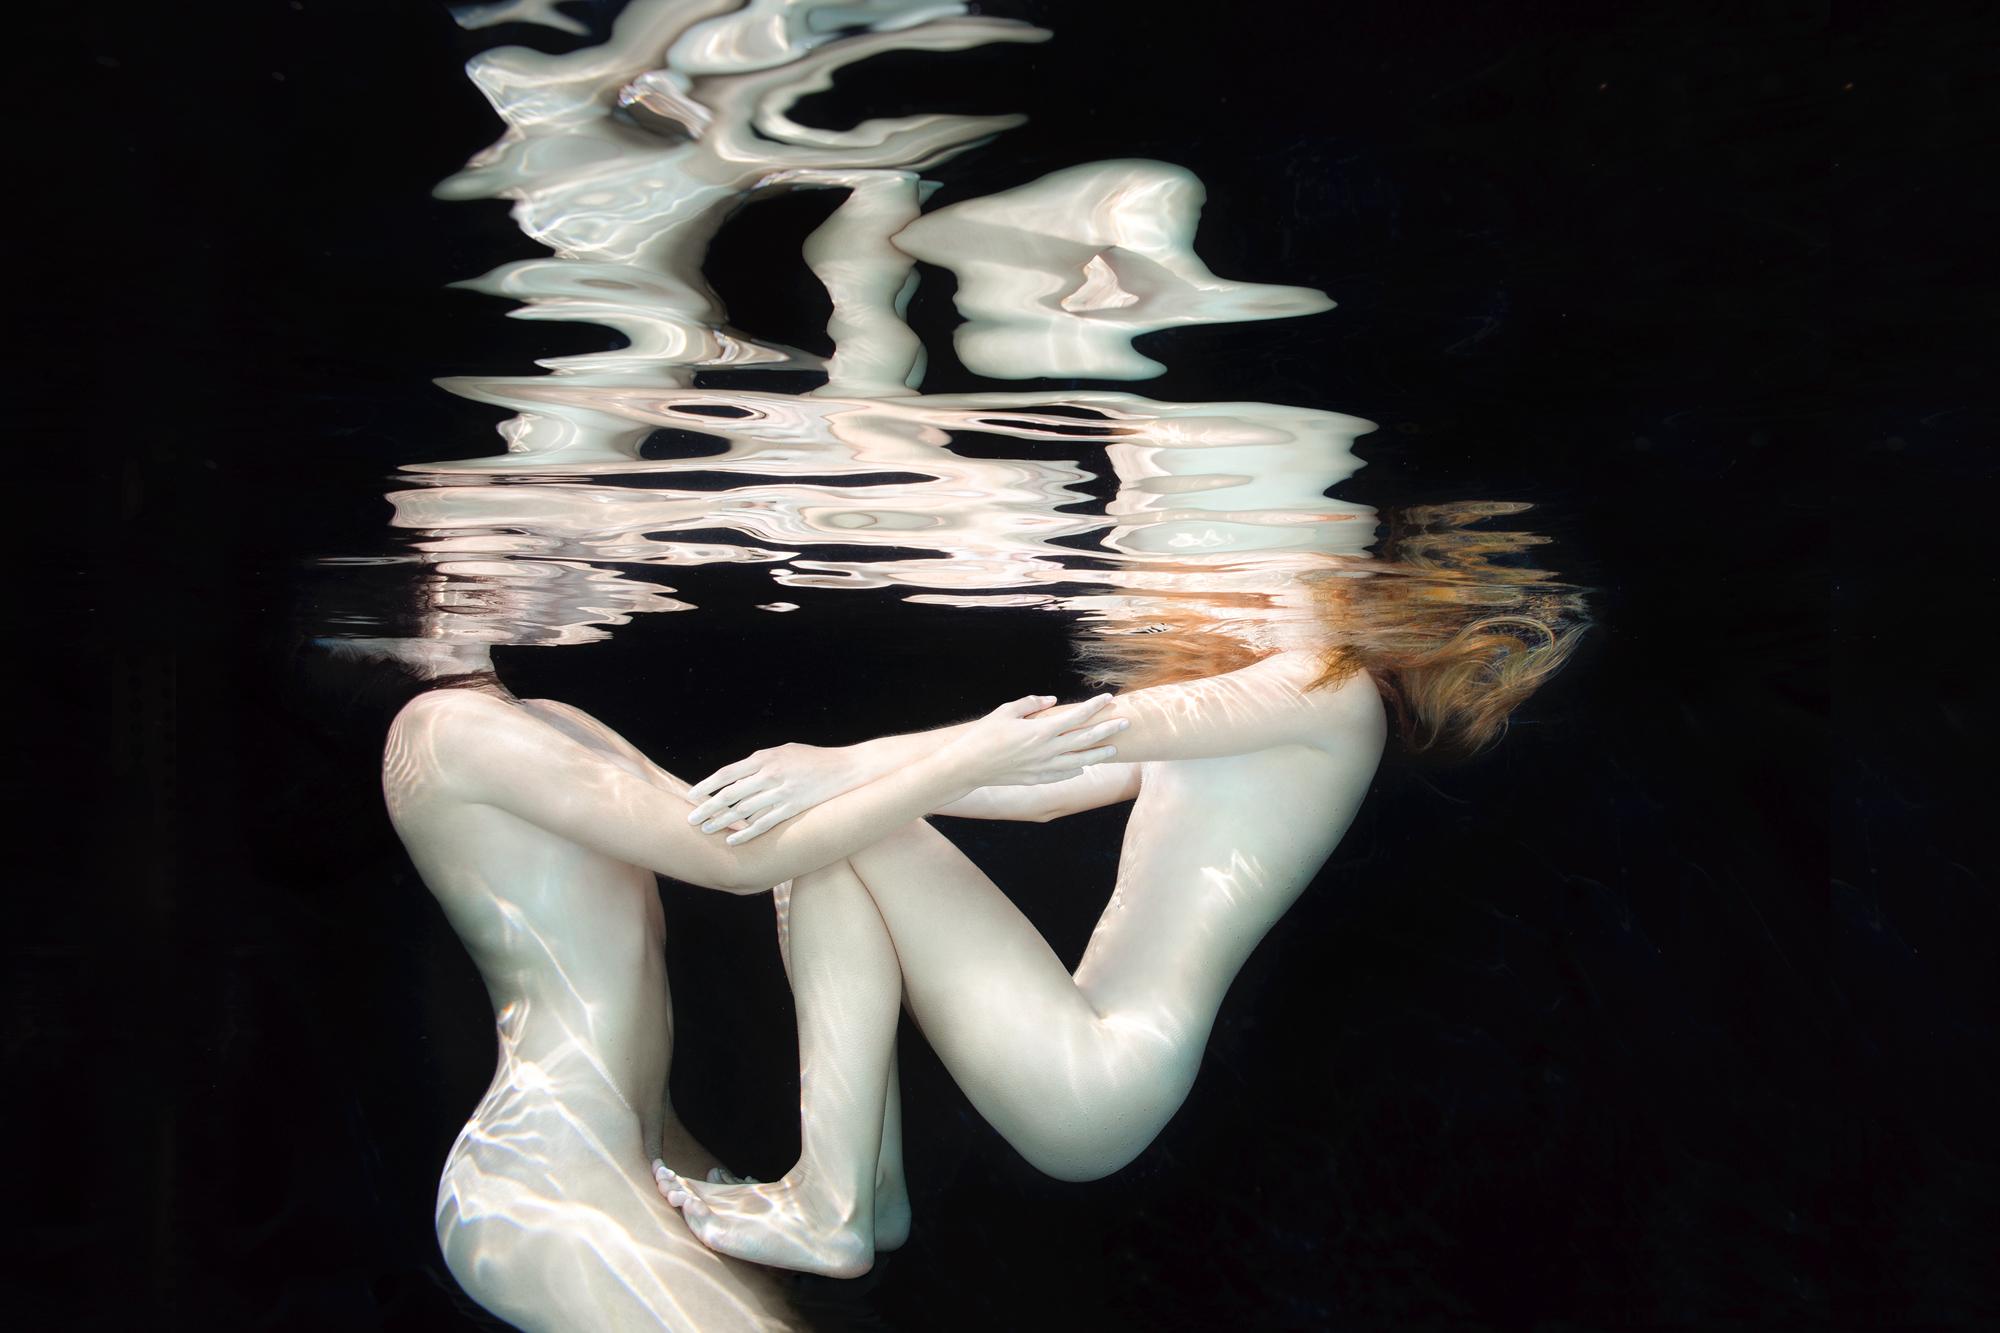 Porcelana - fotografía de desnudo bajo el agua - impresión acrílica 24" х 36"